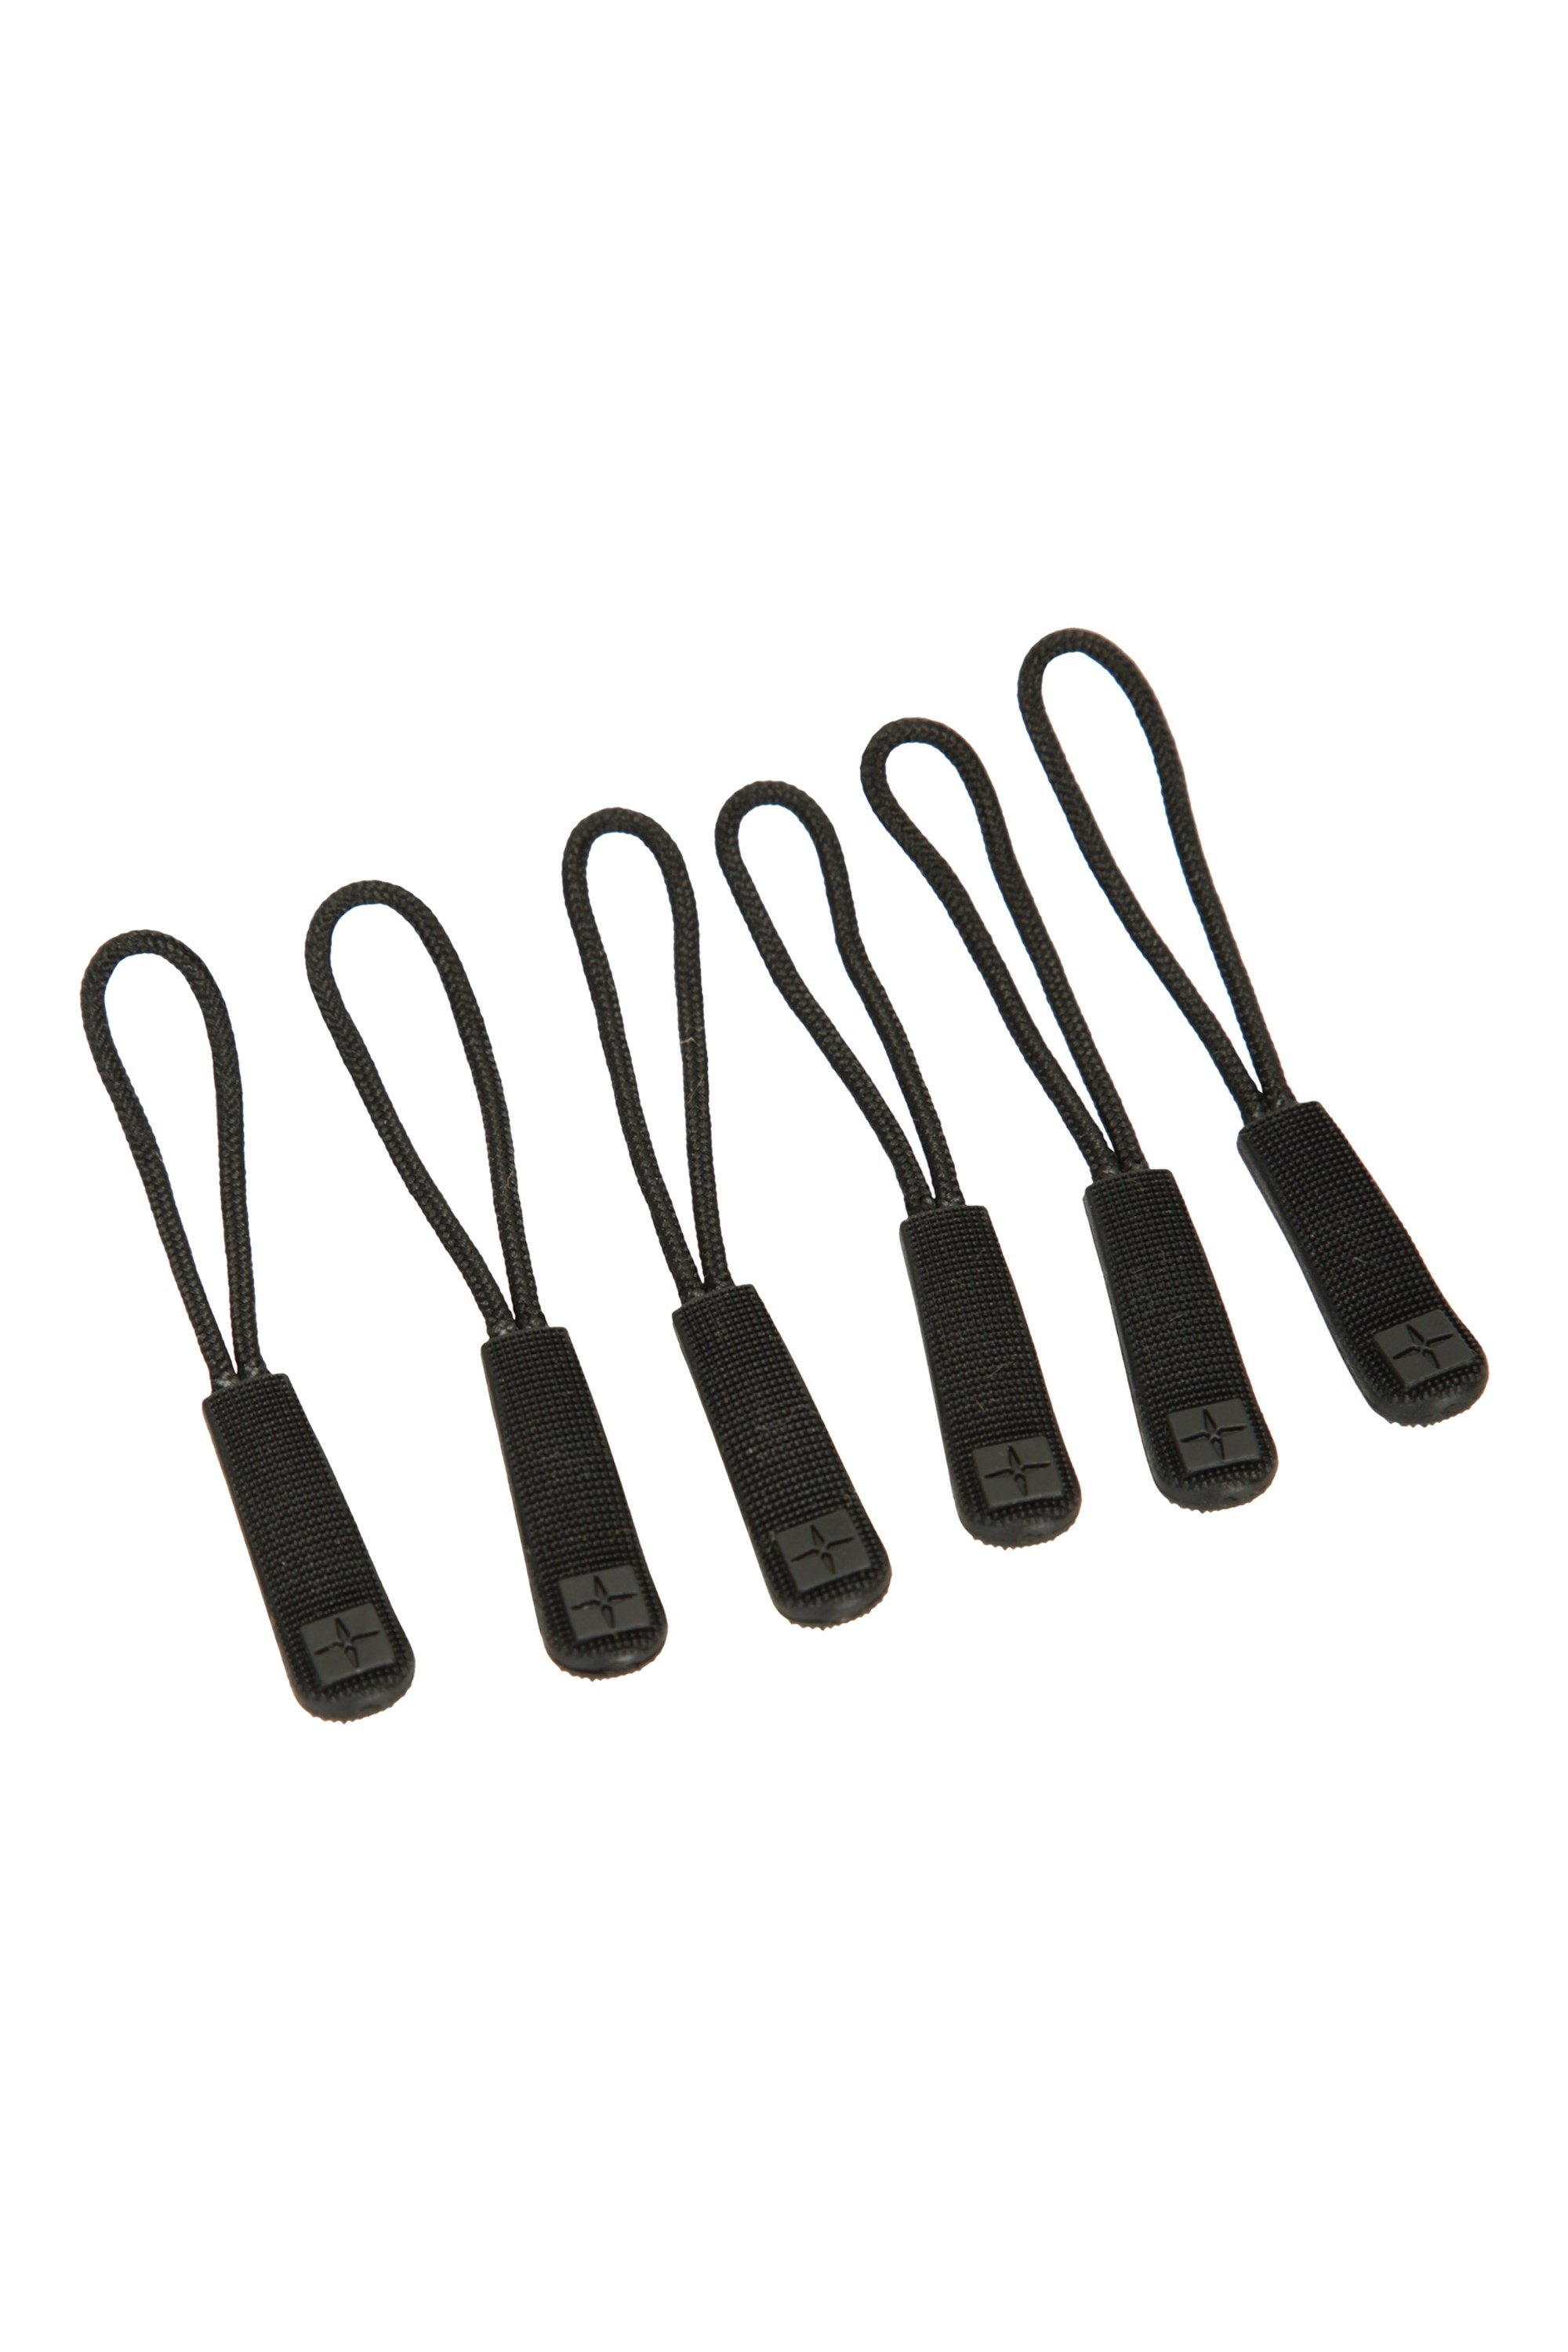 Spare Zip Pullers - 6 Pk - Black